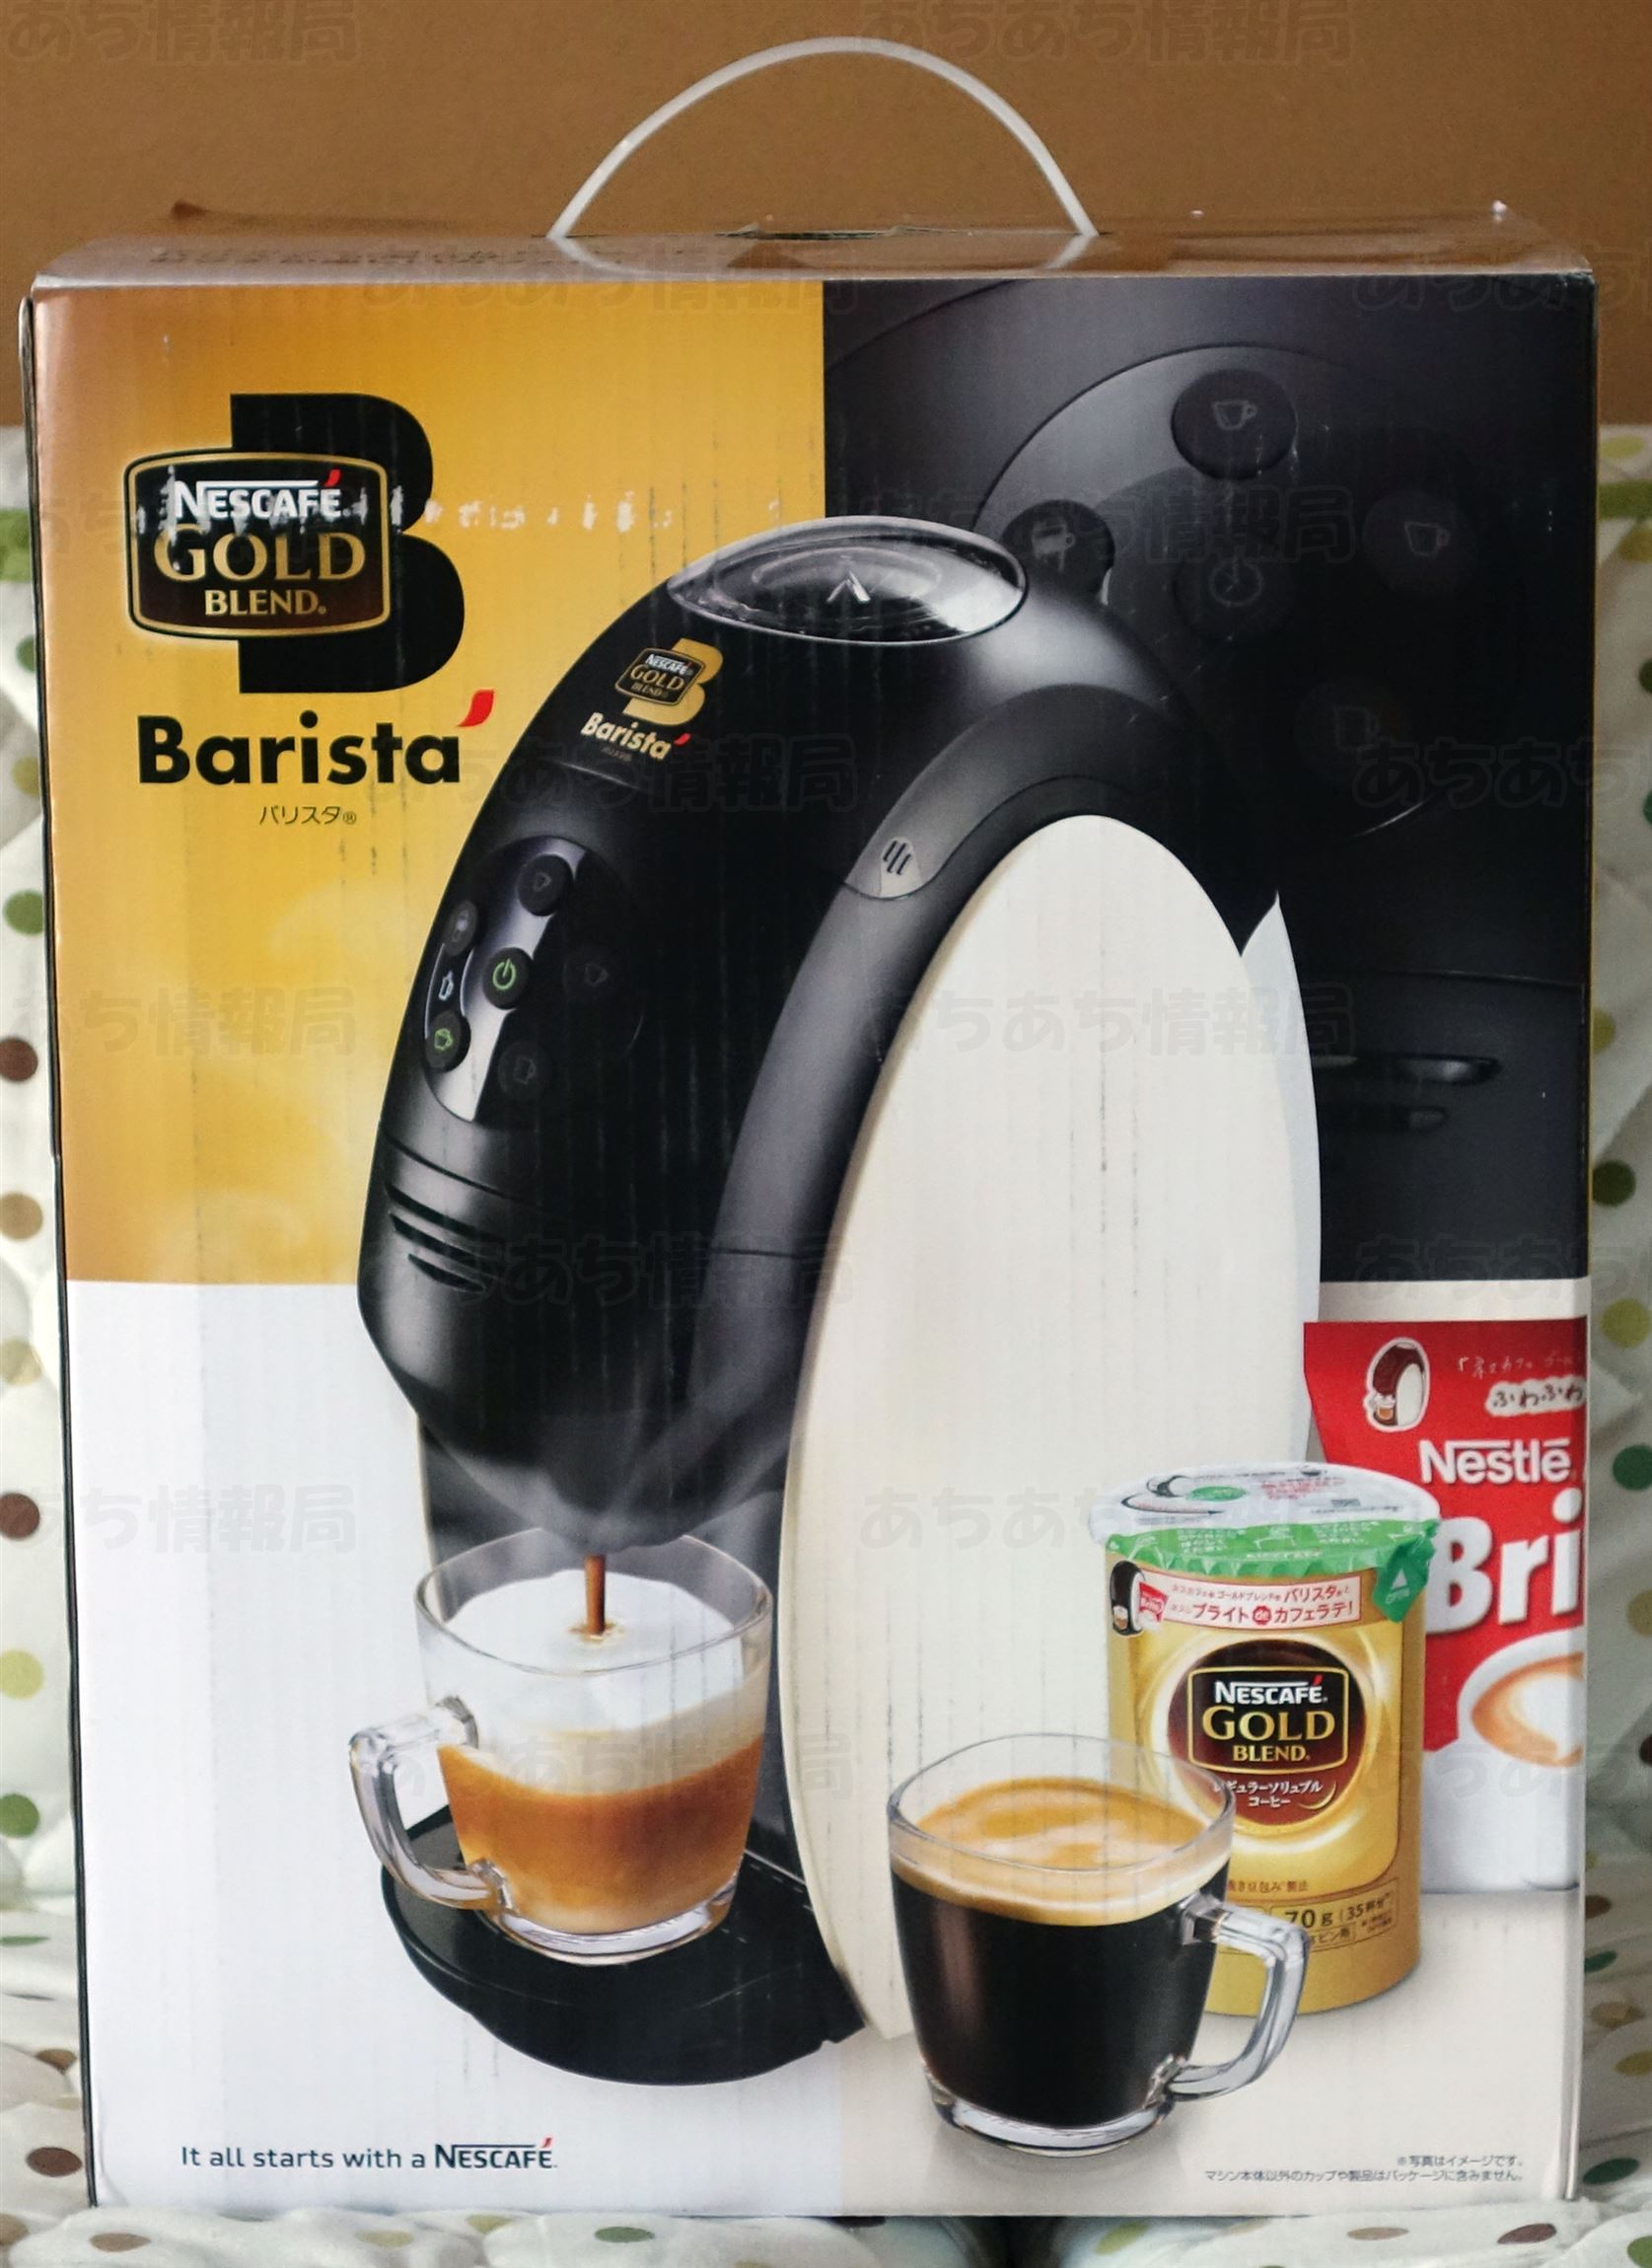 ネスレのコーヒーマシン「バリスタ」購入